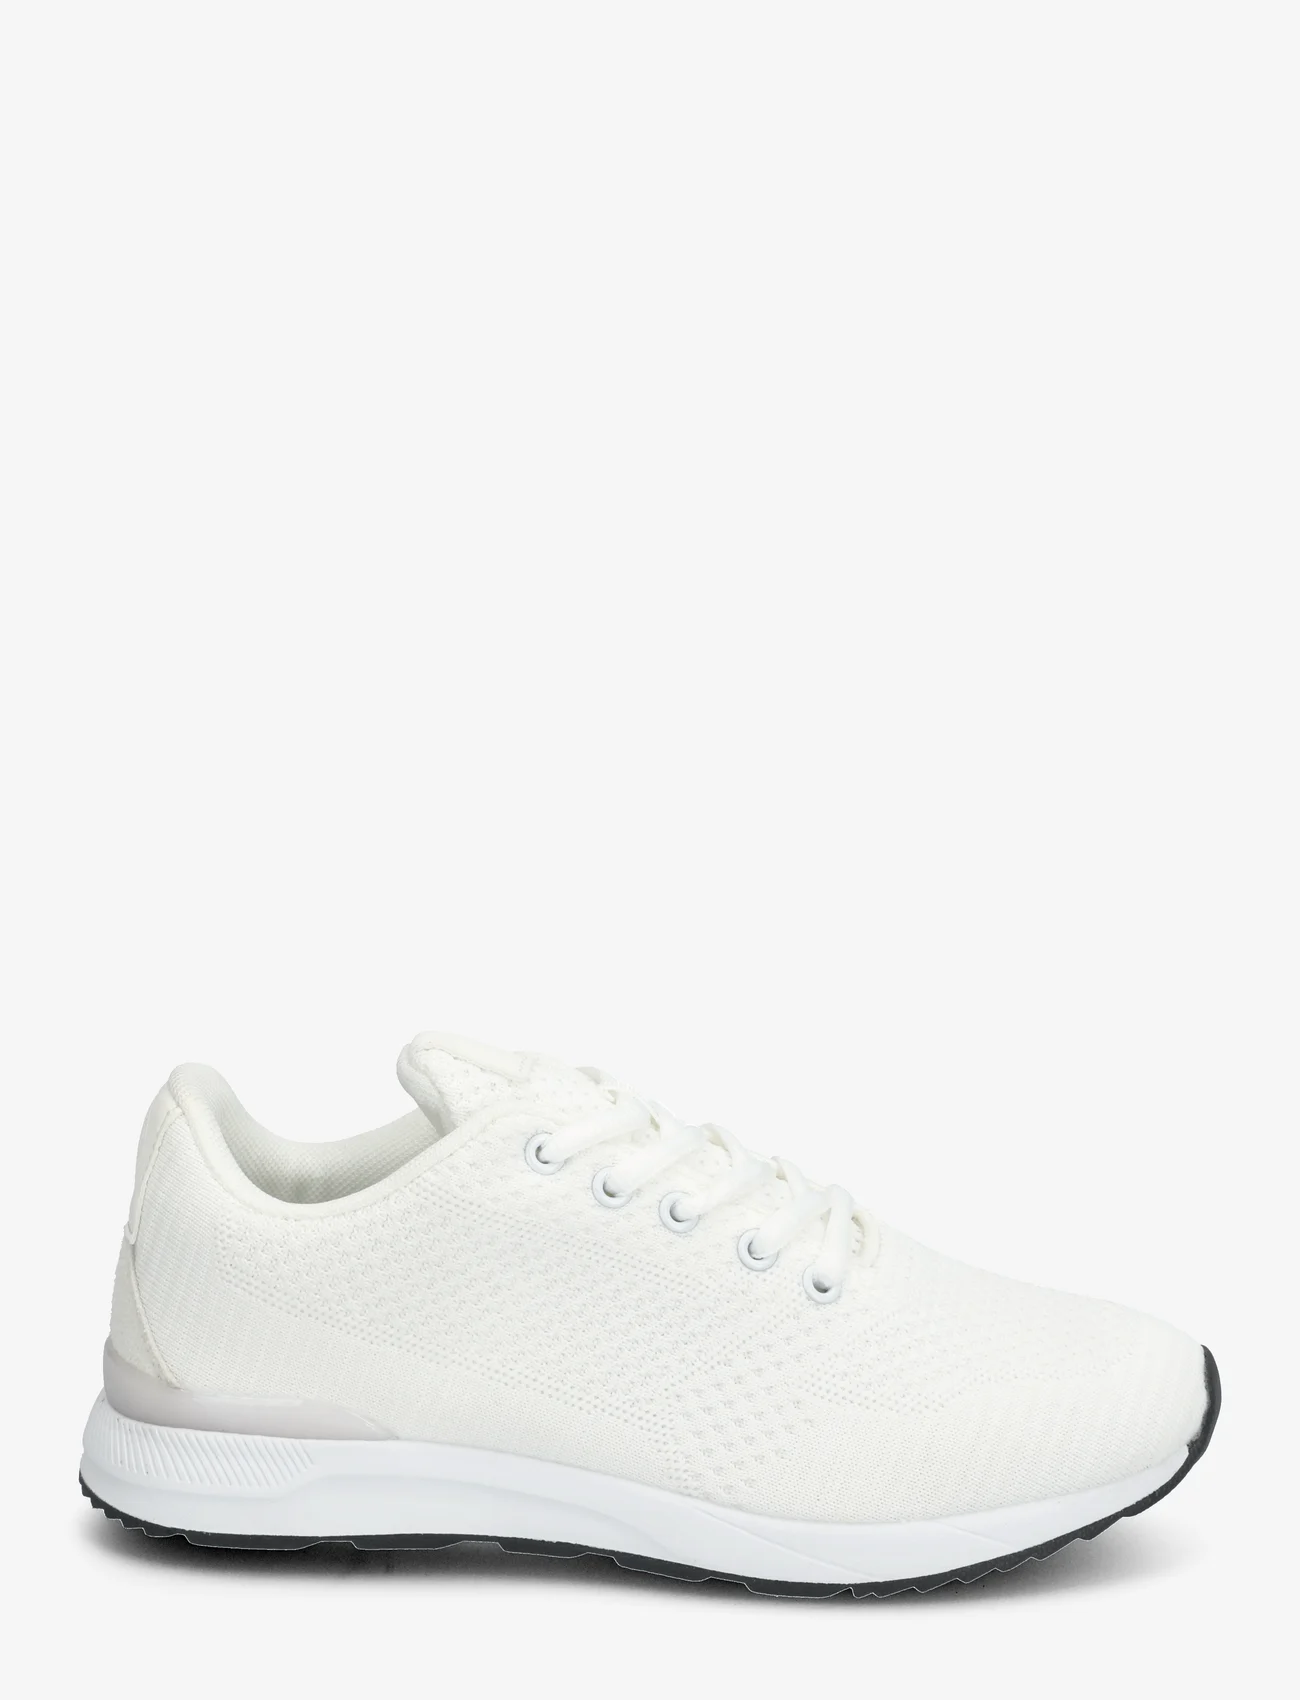 Exani - LUKE JR - sneakers med lavt skaft - white - 1